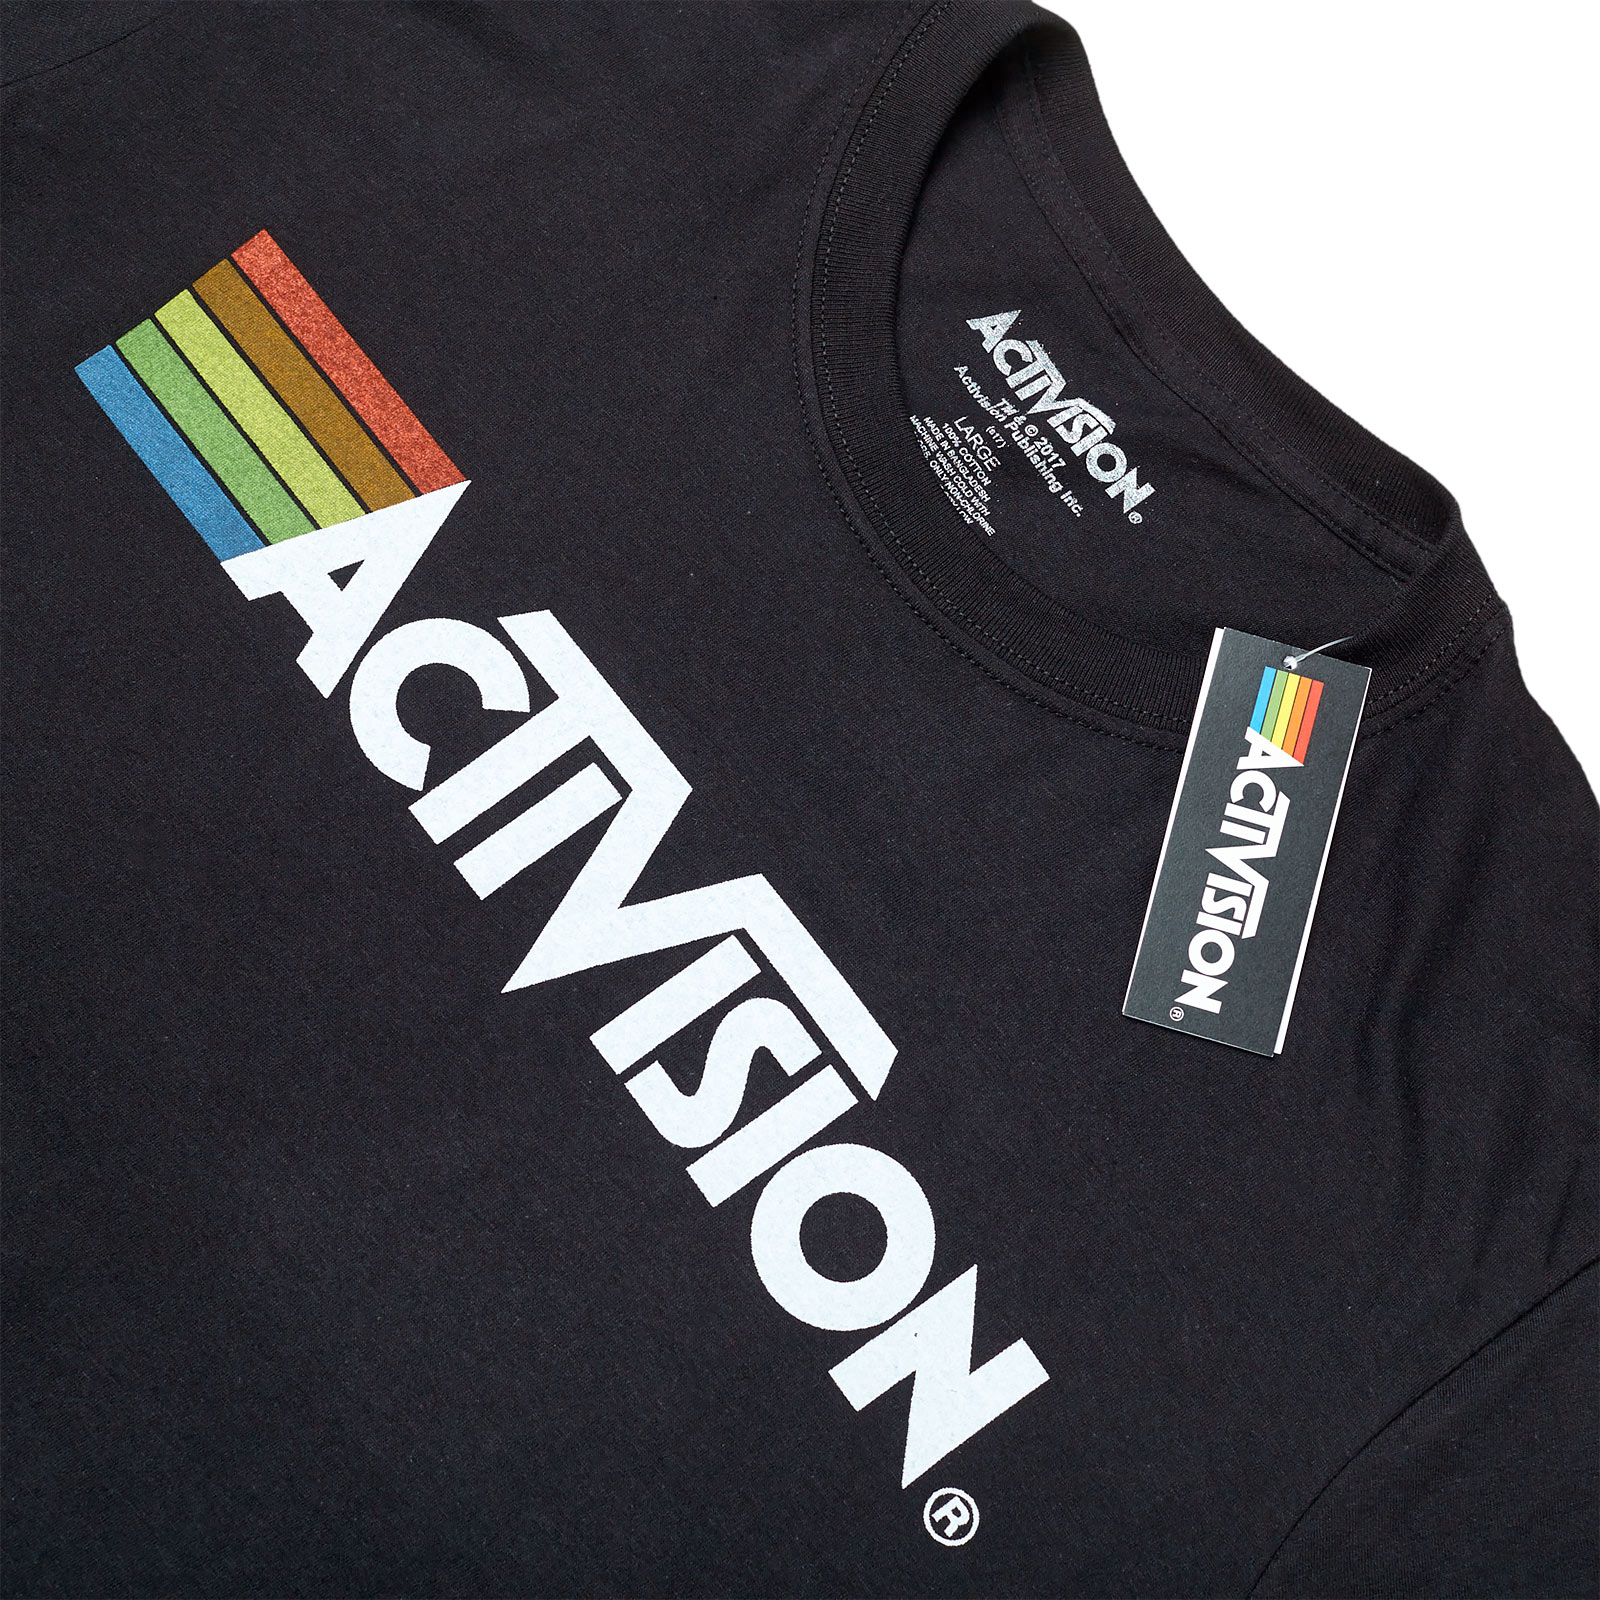 Activision - Logo T-Shirt schwarz